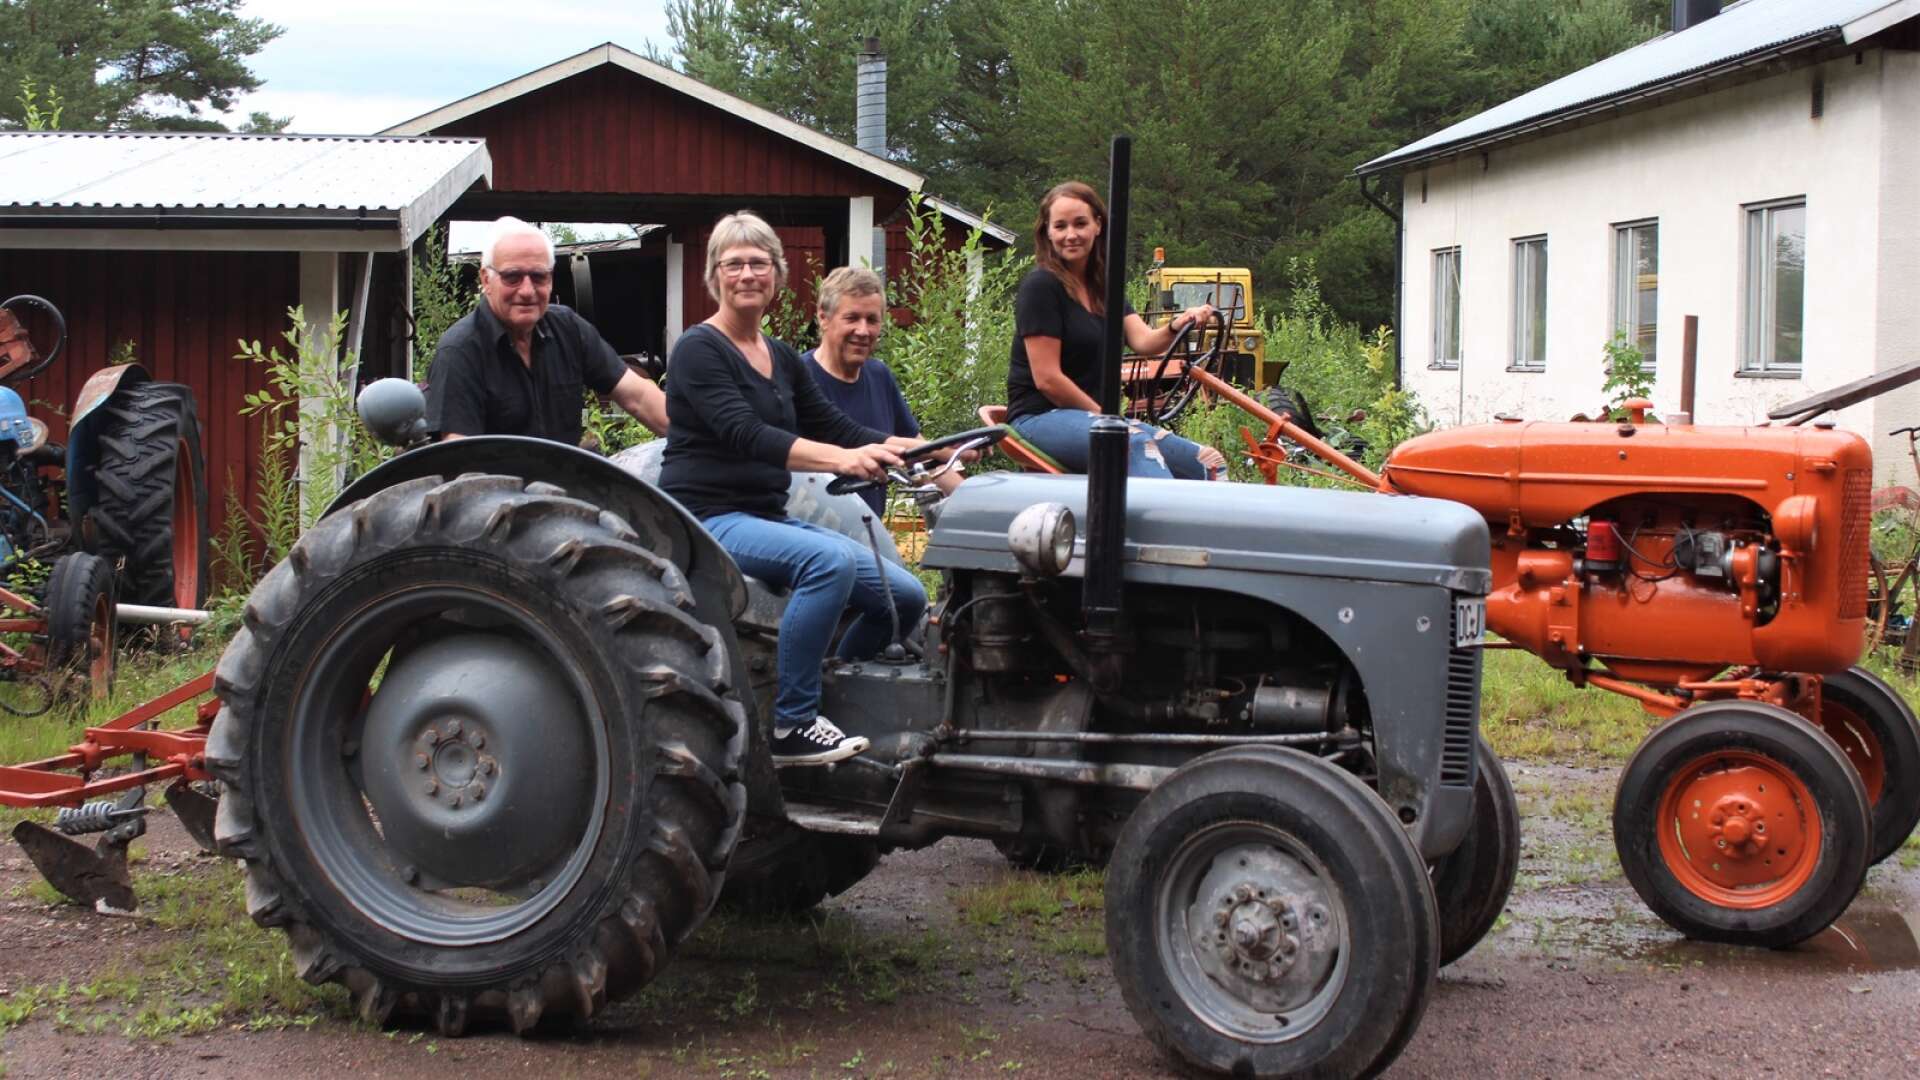 Håkan Nordström, Maria Molin, Hannu Olsson och Emma Olsson är i full gång med förberedelserna inför Teknikdagen i Rudskoga som äger rum på söndag.